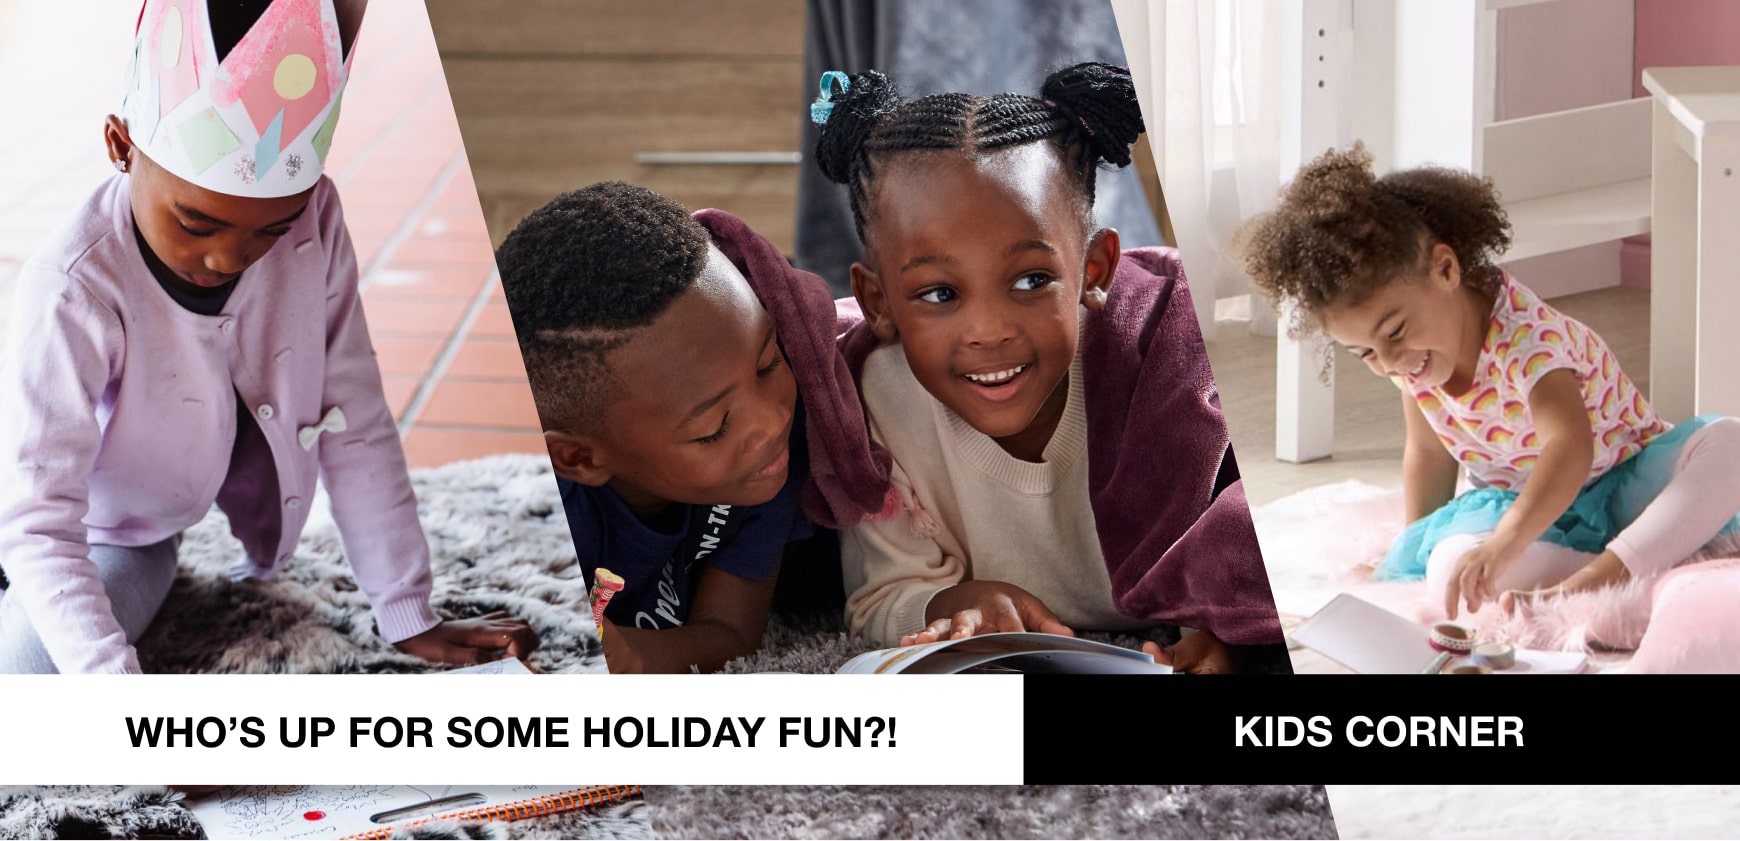 kids corner. Kids holiday fun